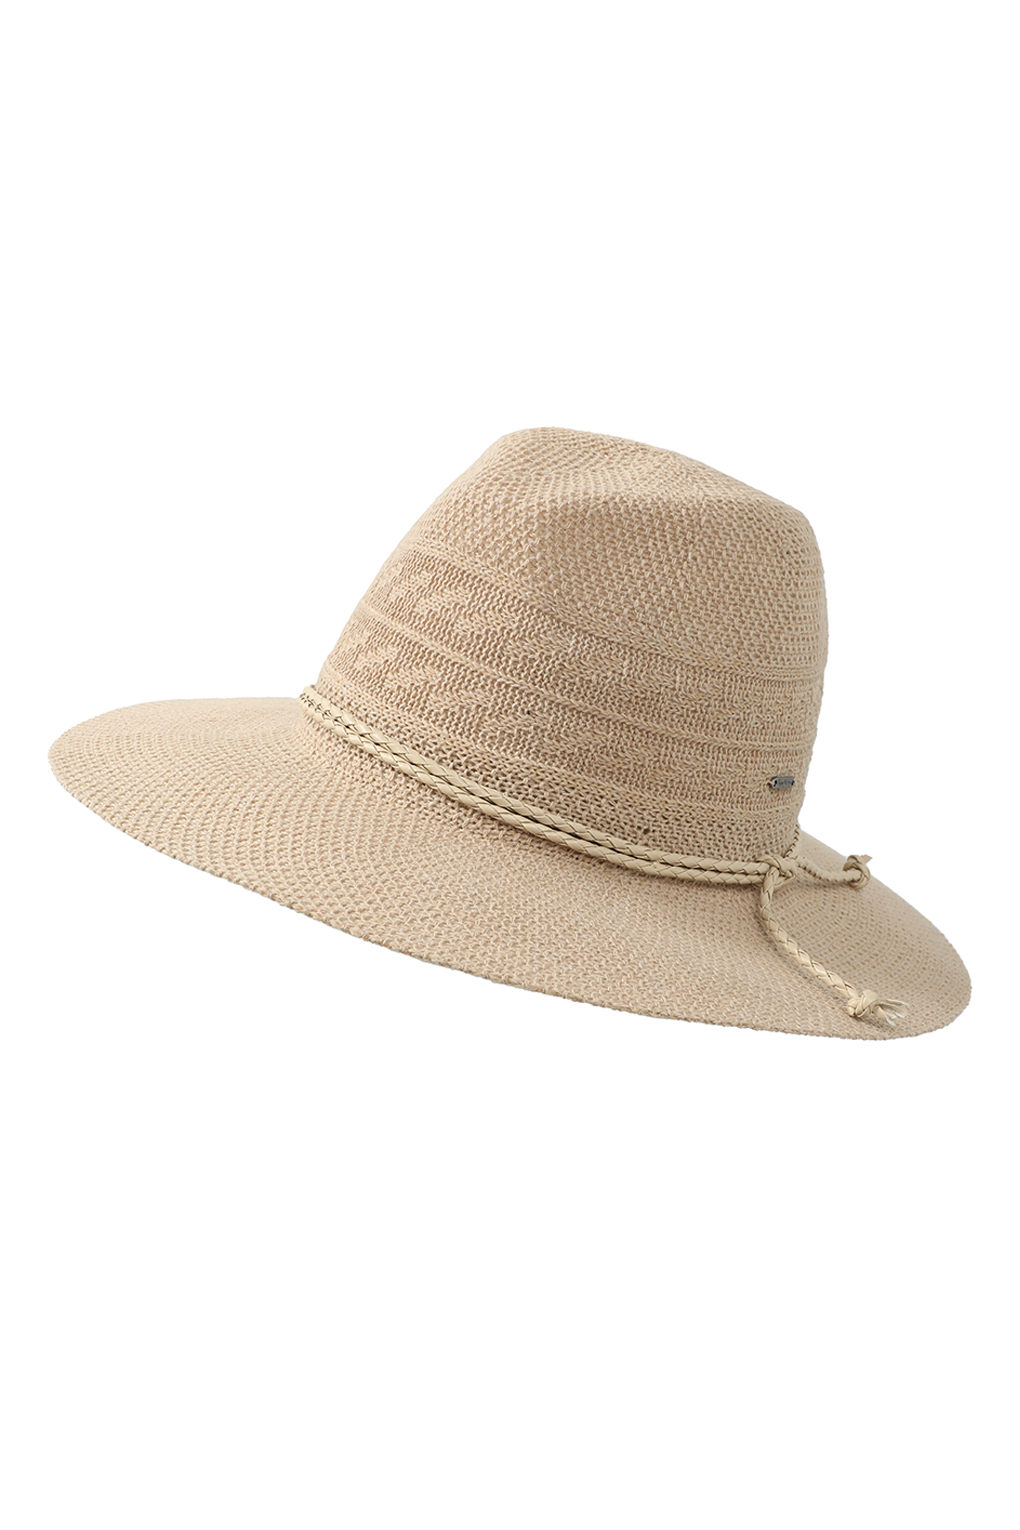 Шляпа женская PEPE JEANS PL040339 бежевая, one size